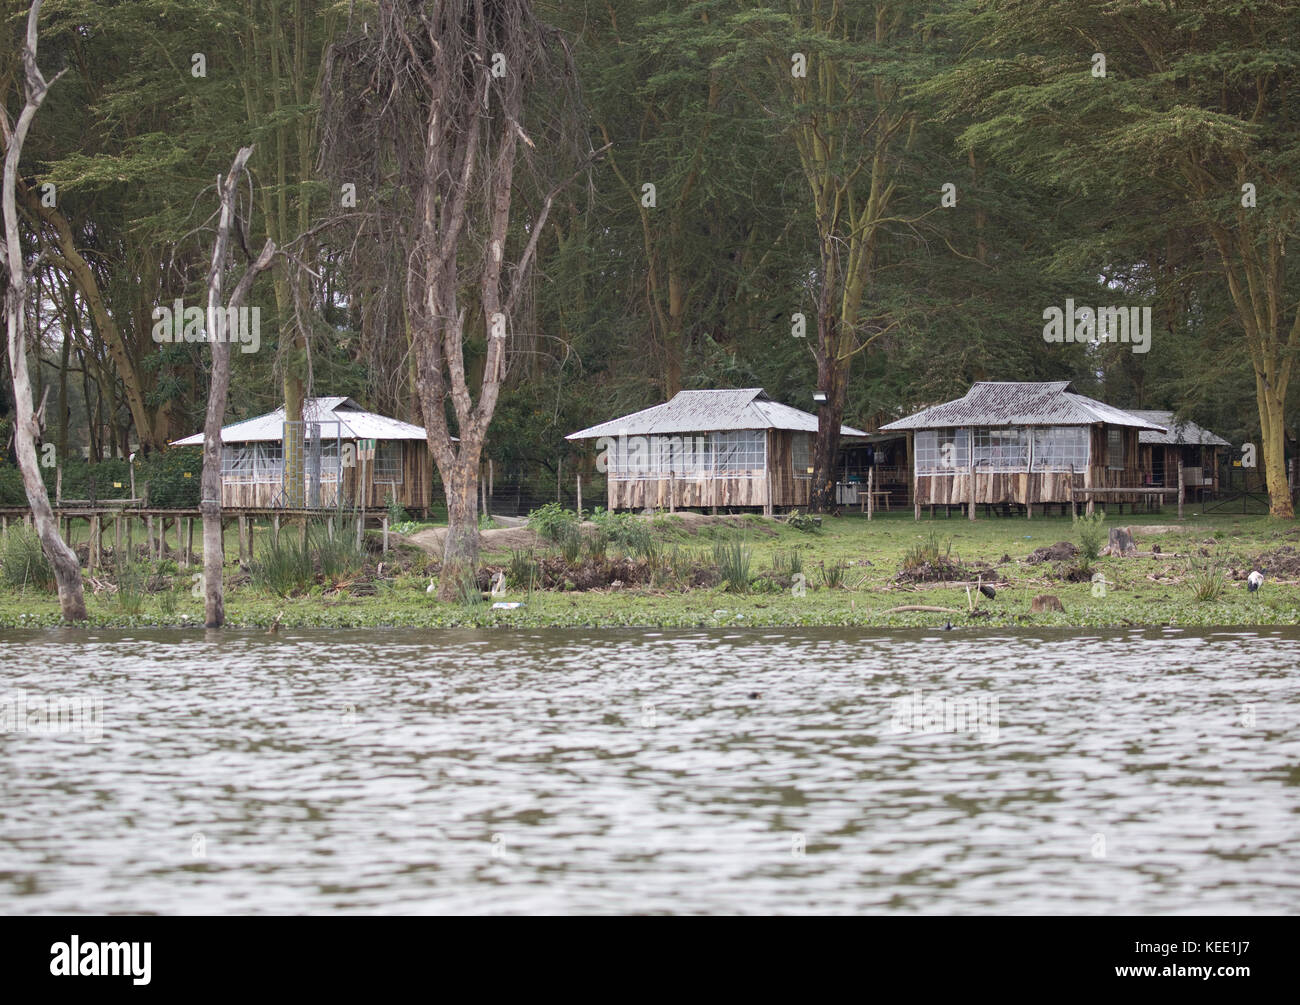 Chinese tourist lodges constructed on shore of Lake Naivasha Kenya Stock Photo